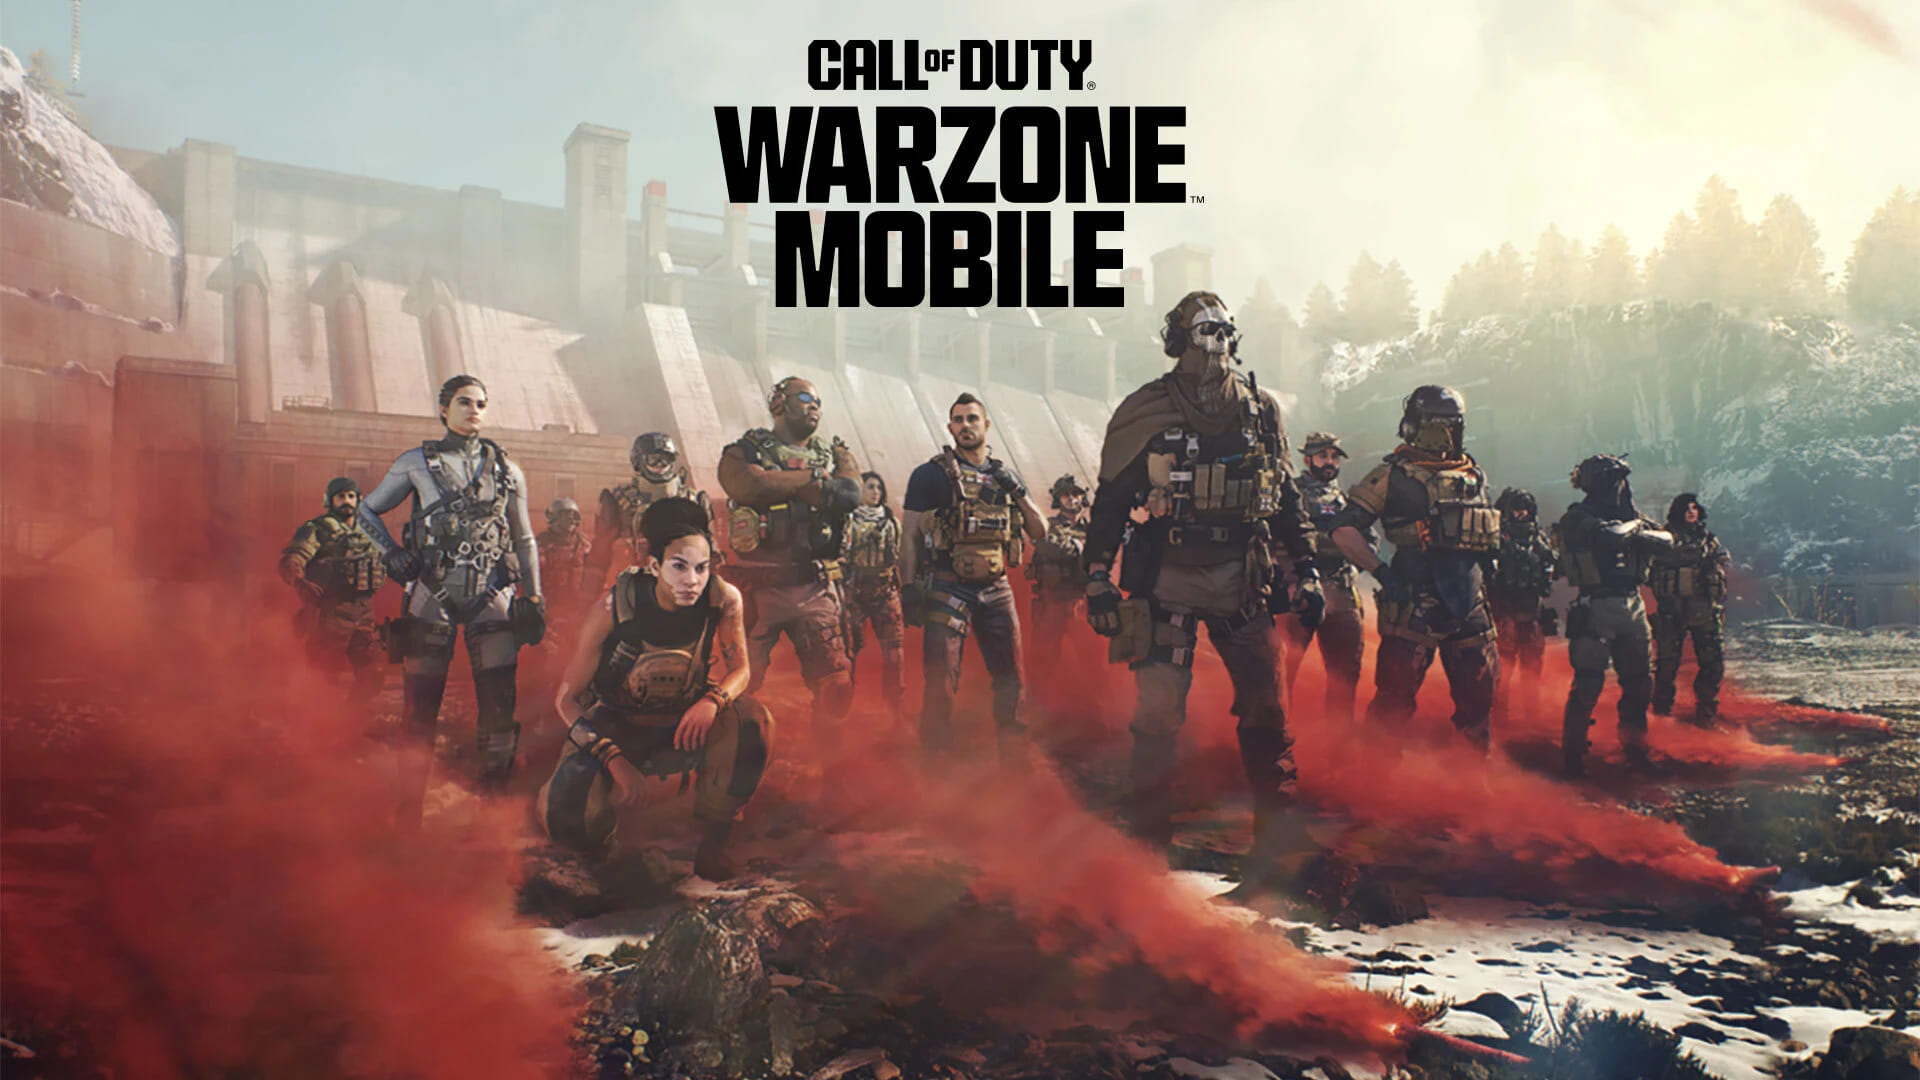 วิธีรับสกิน 5.11 Stryker ฟรีใน Call of Duty: Warzone Mobile